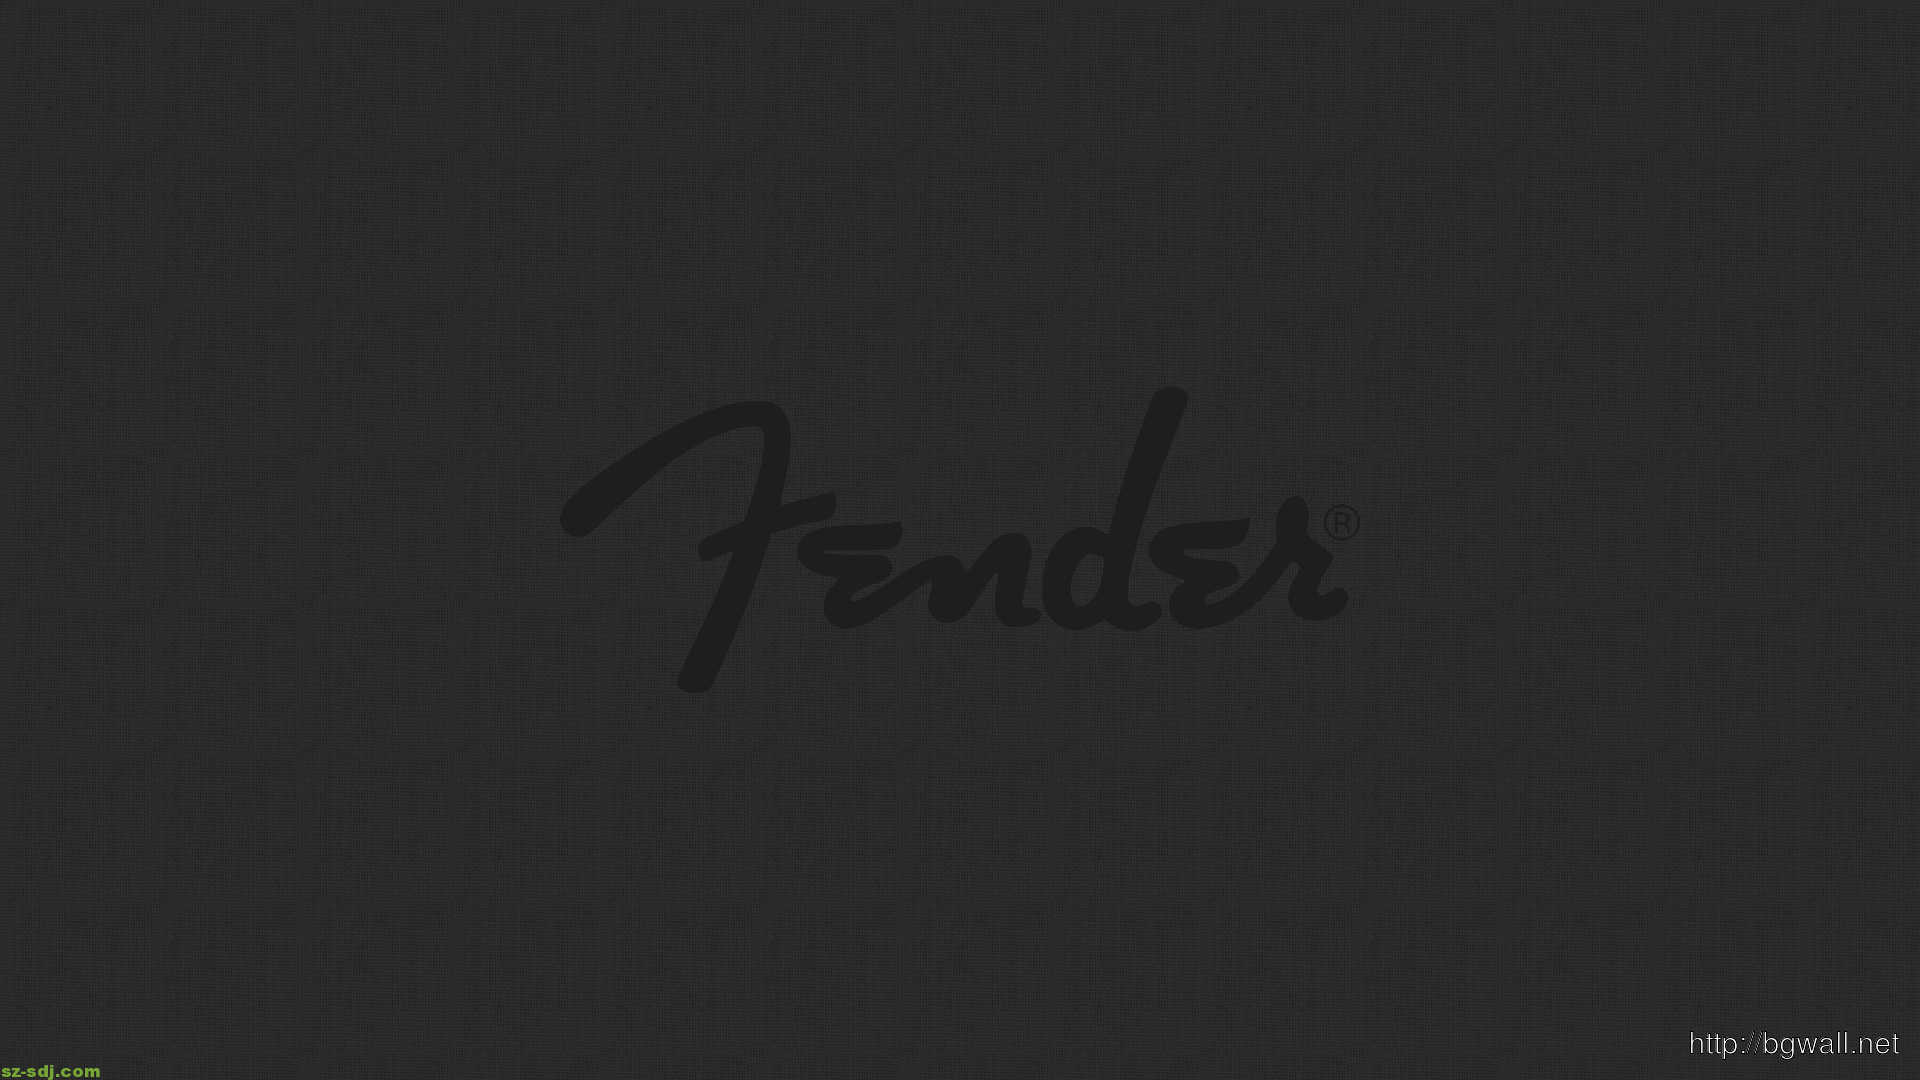 Fender Logo Wallpapers 4k Hd Fender Logo Backgrounds On Wallpaperbat